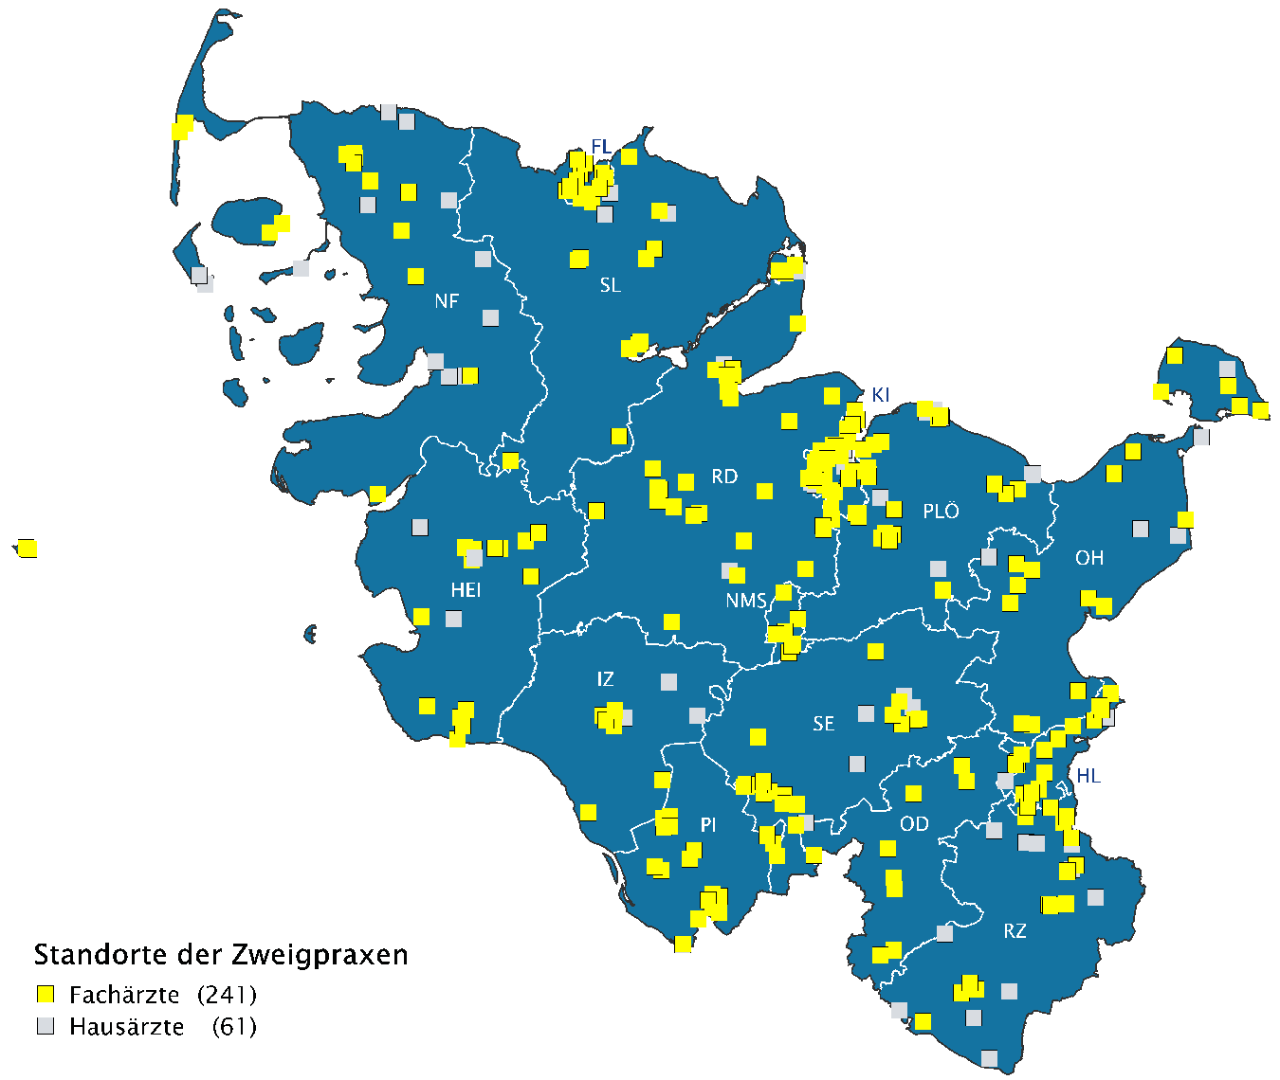 Standorte der Zweigpraxen in Schleswig-Holstein